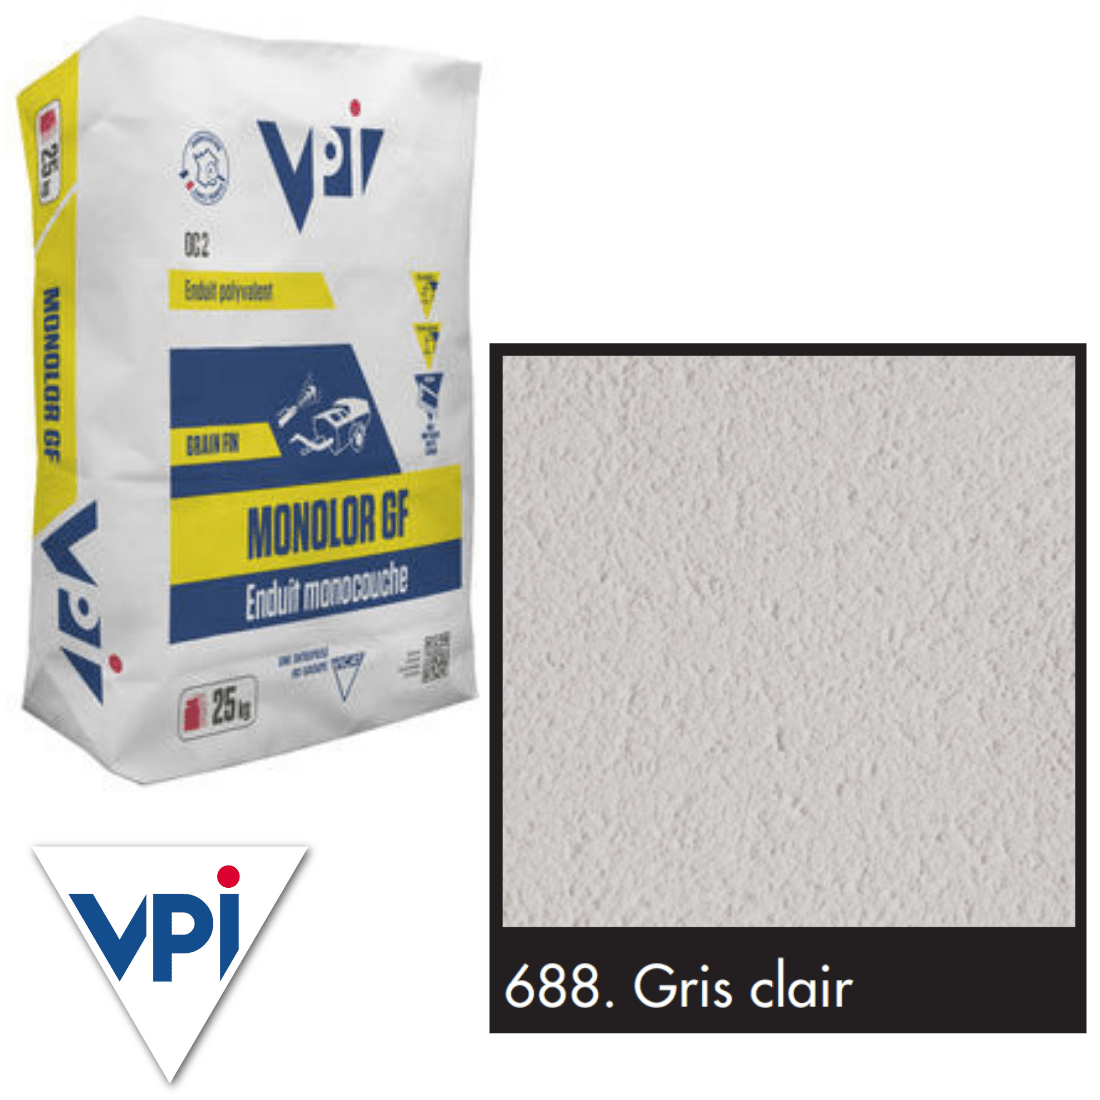 VPI Monocal GM688 Gris Clair 25kg - Builders Merchant Direct